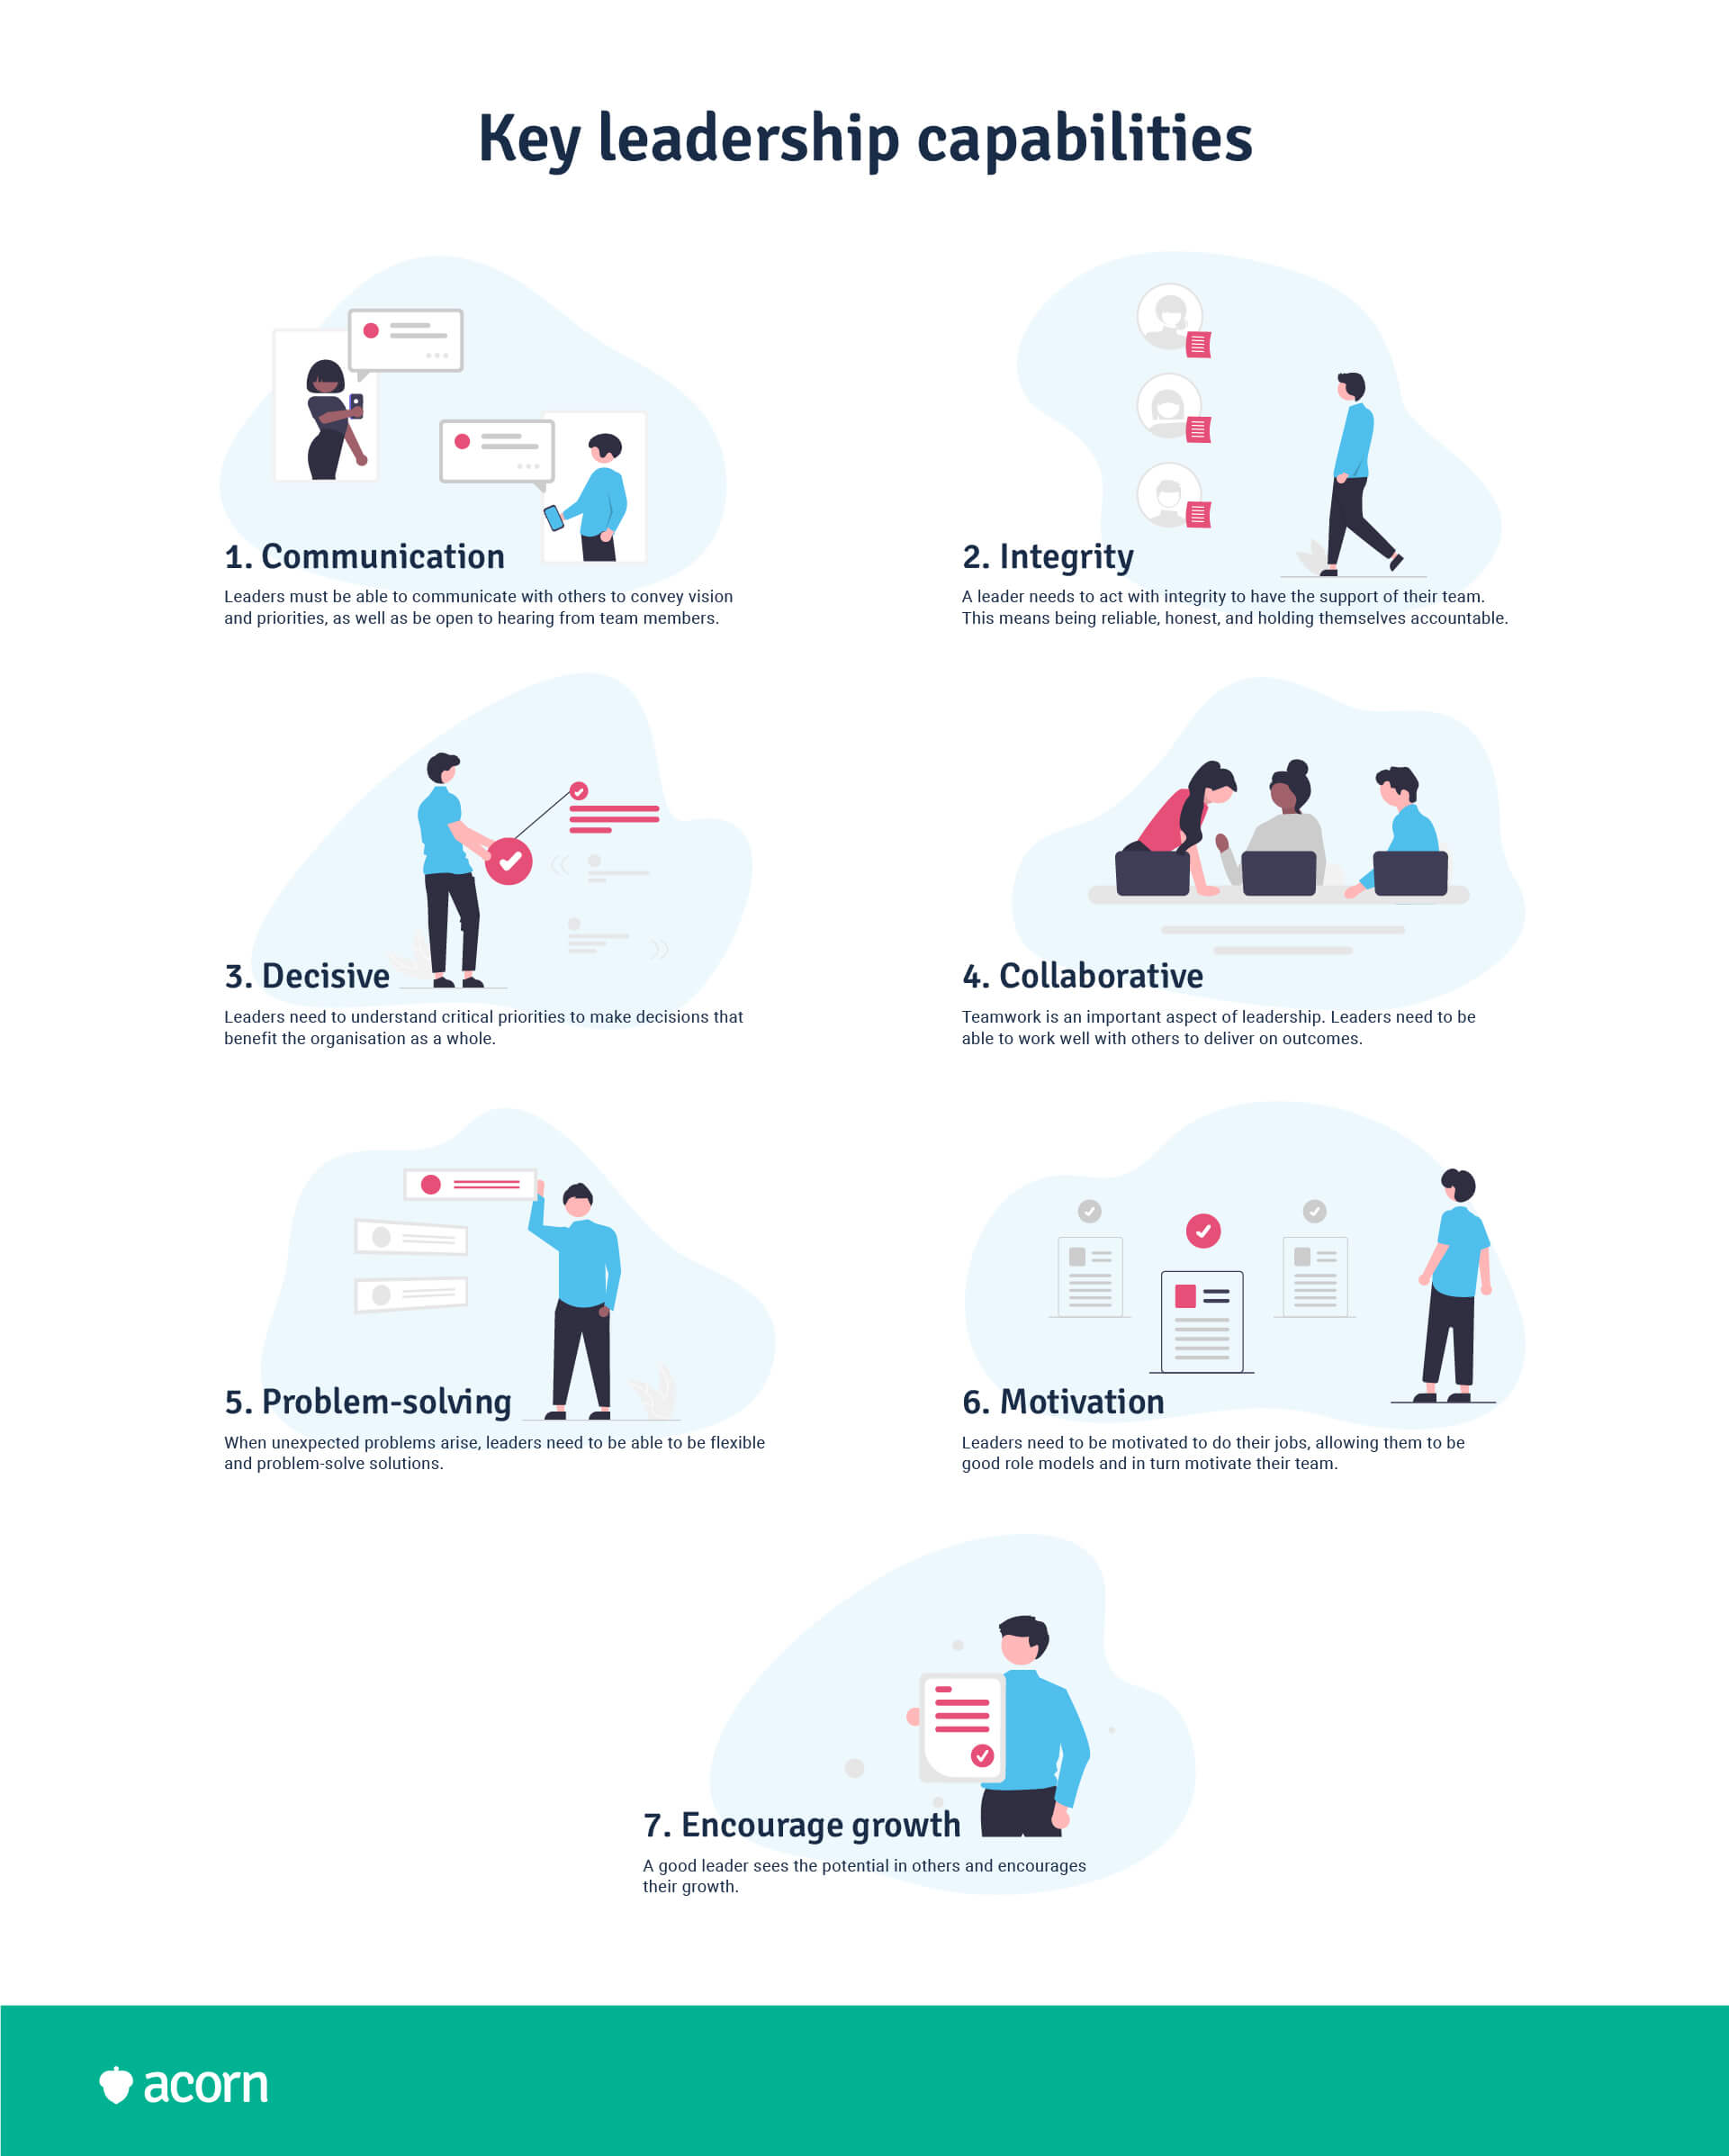 7 key leadership capabilities